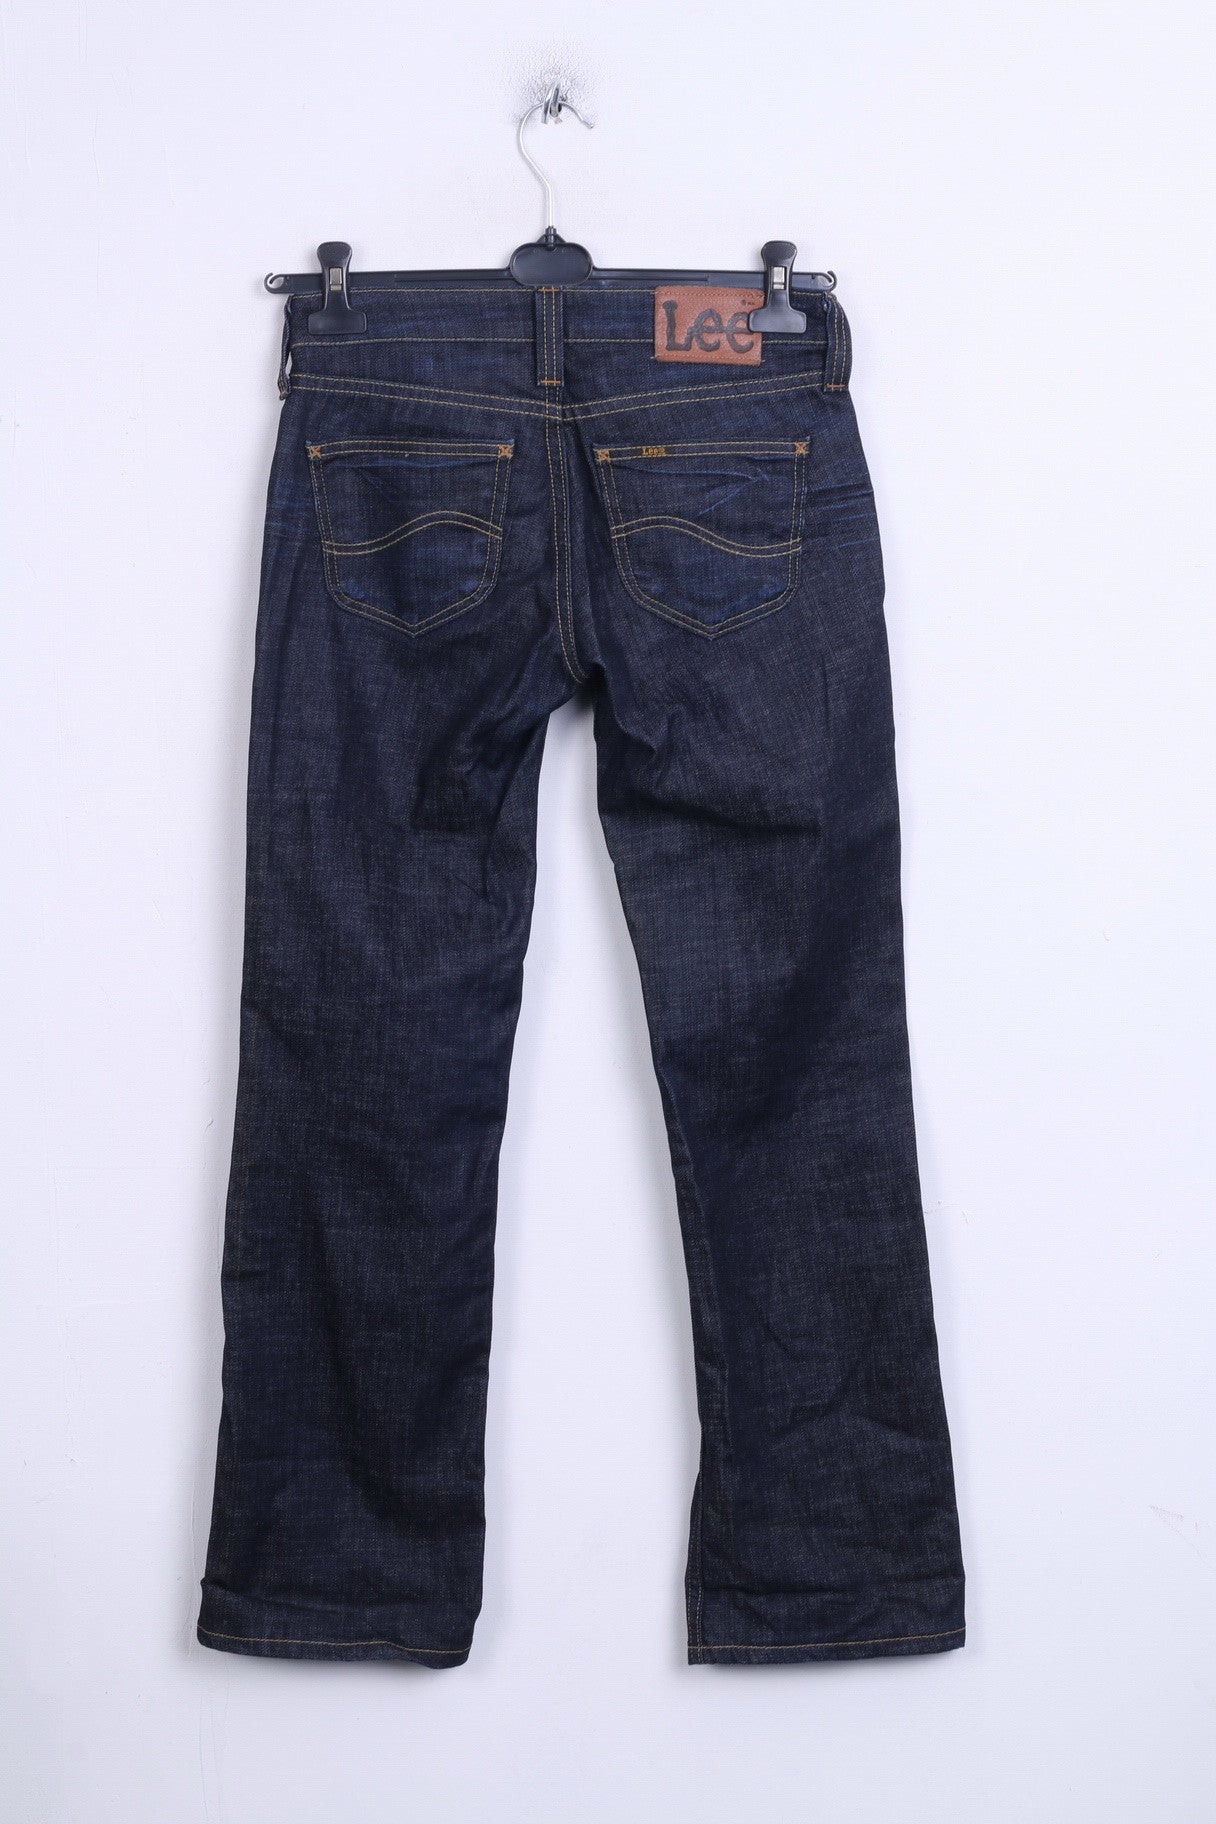 Lee Womens Trousers W28 L33 Denim Jeans Cotton Navy - RetrospectClothes